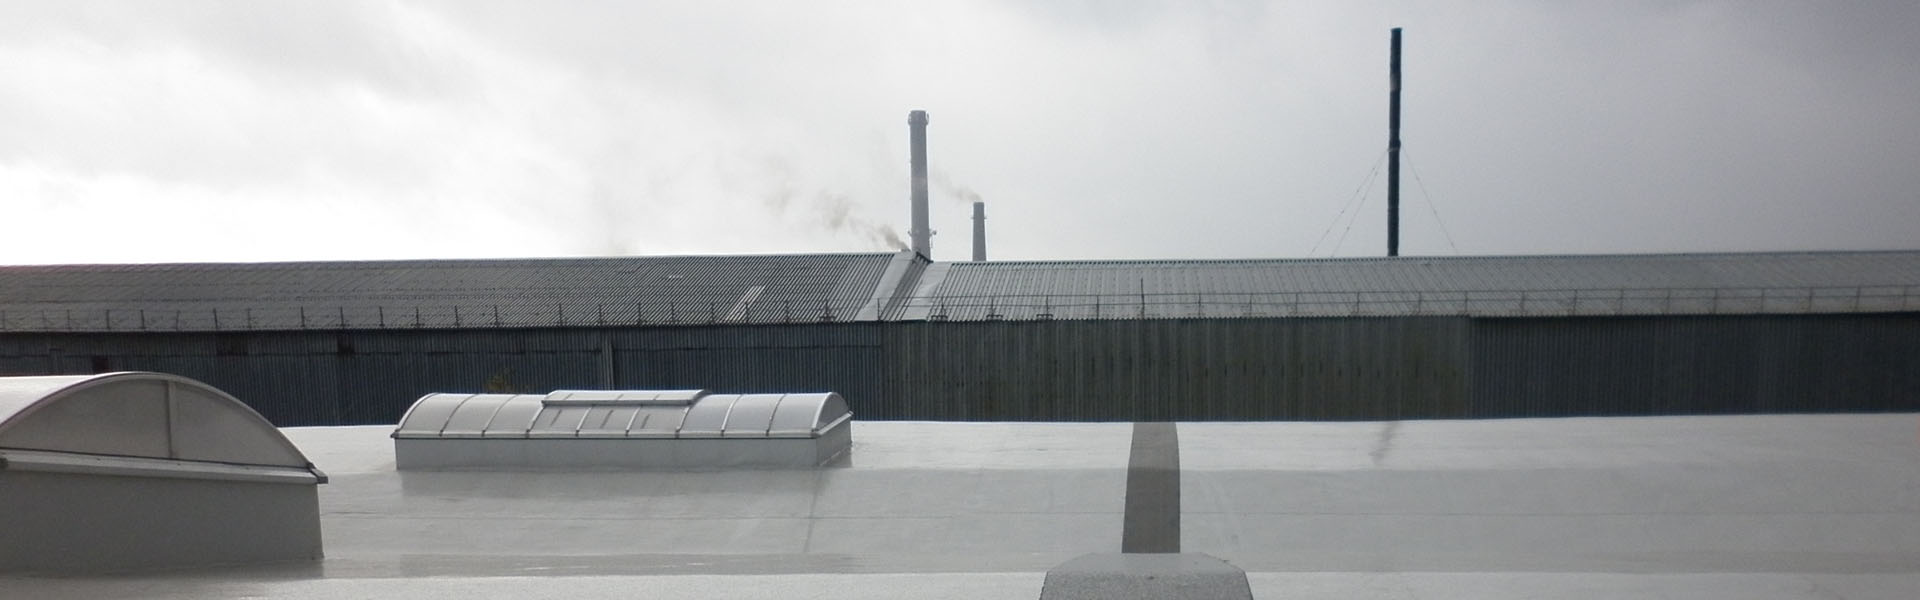 Выполняемые работы - Гидроизоляция крыши